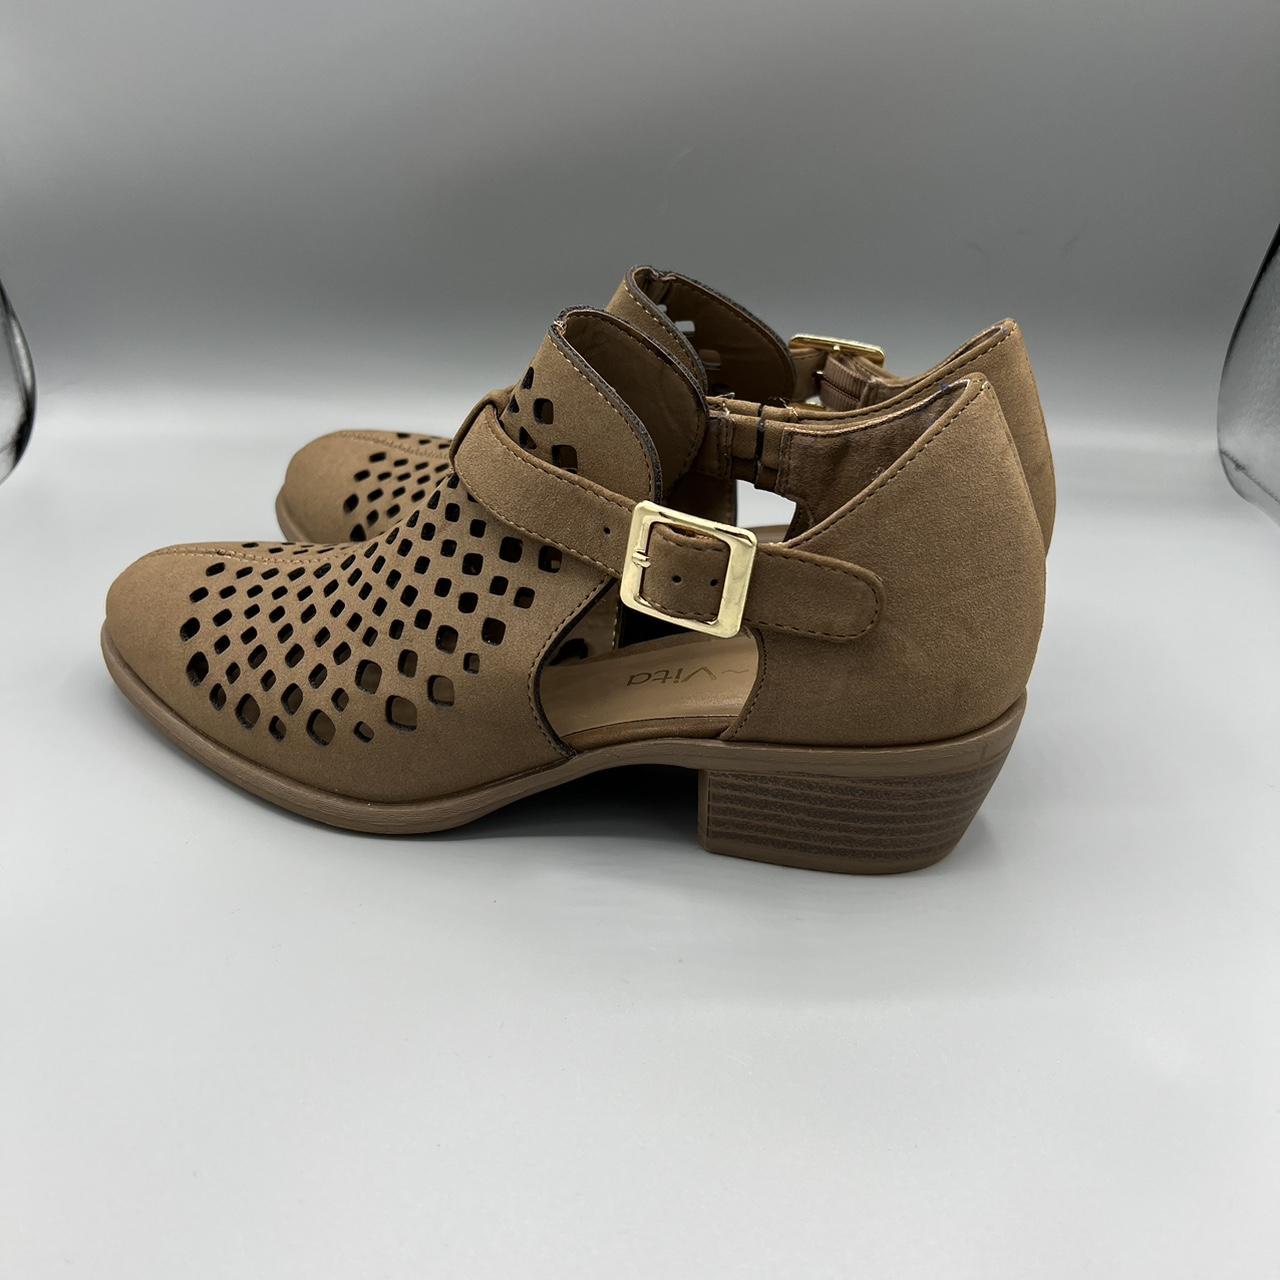 Bella Vita Women's Tan Boots (4)